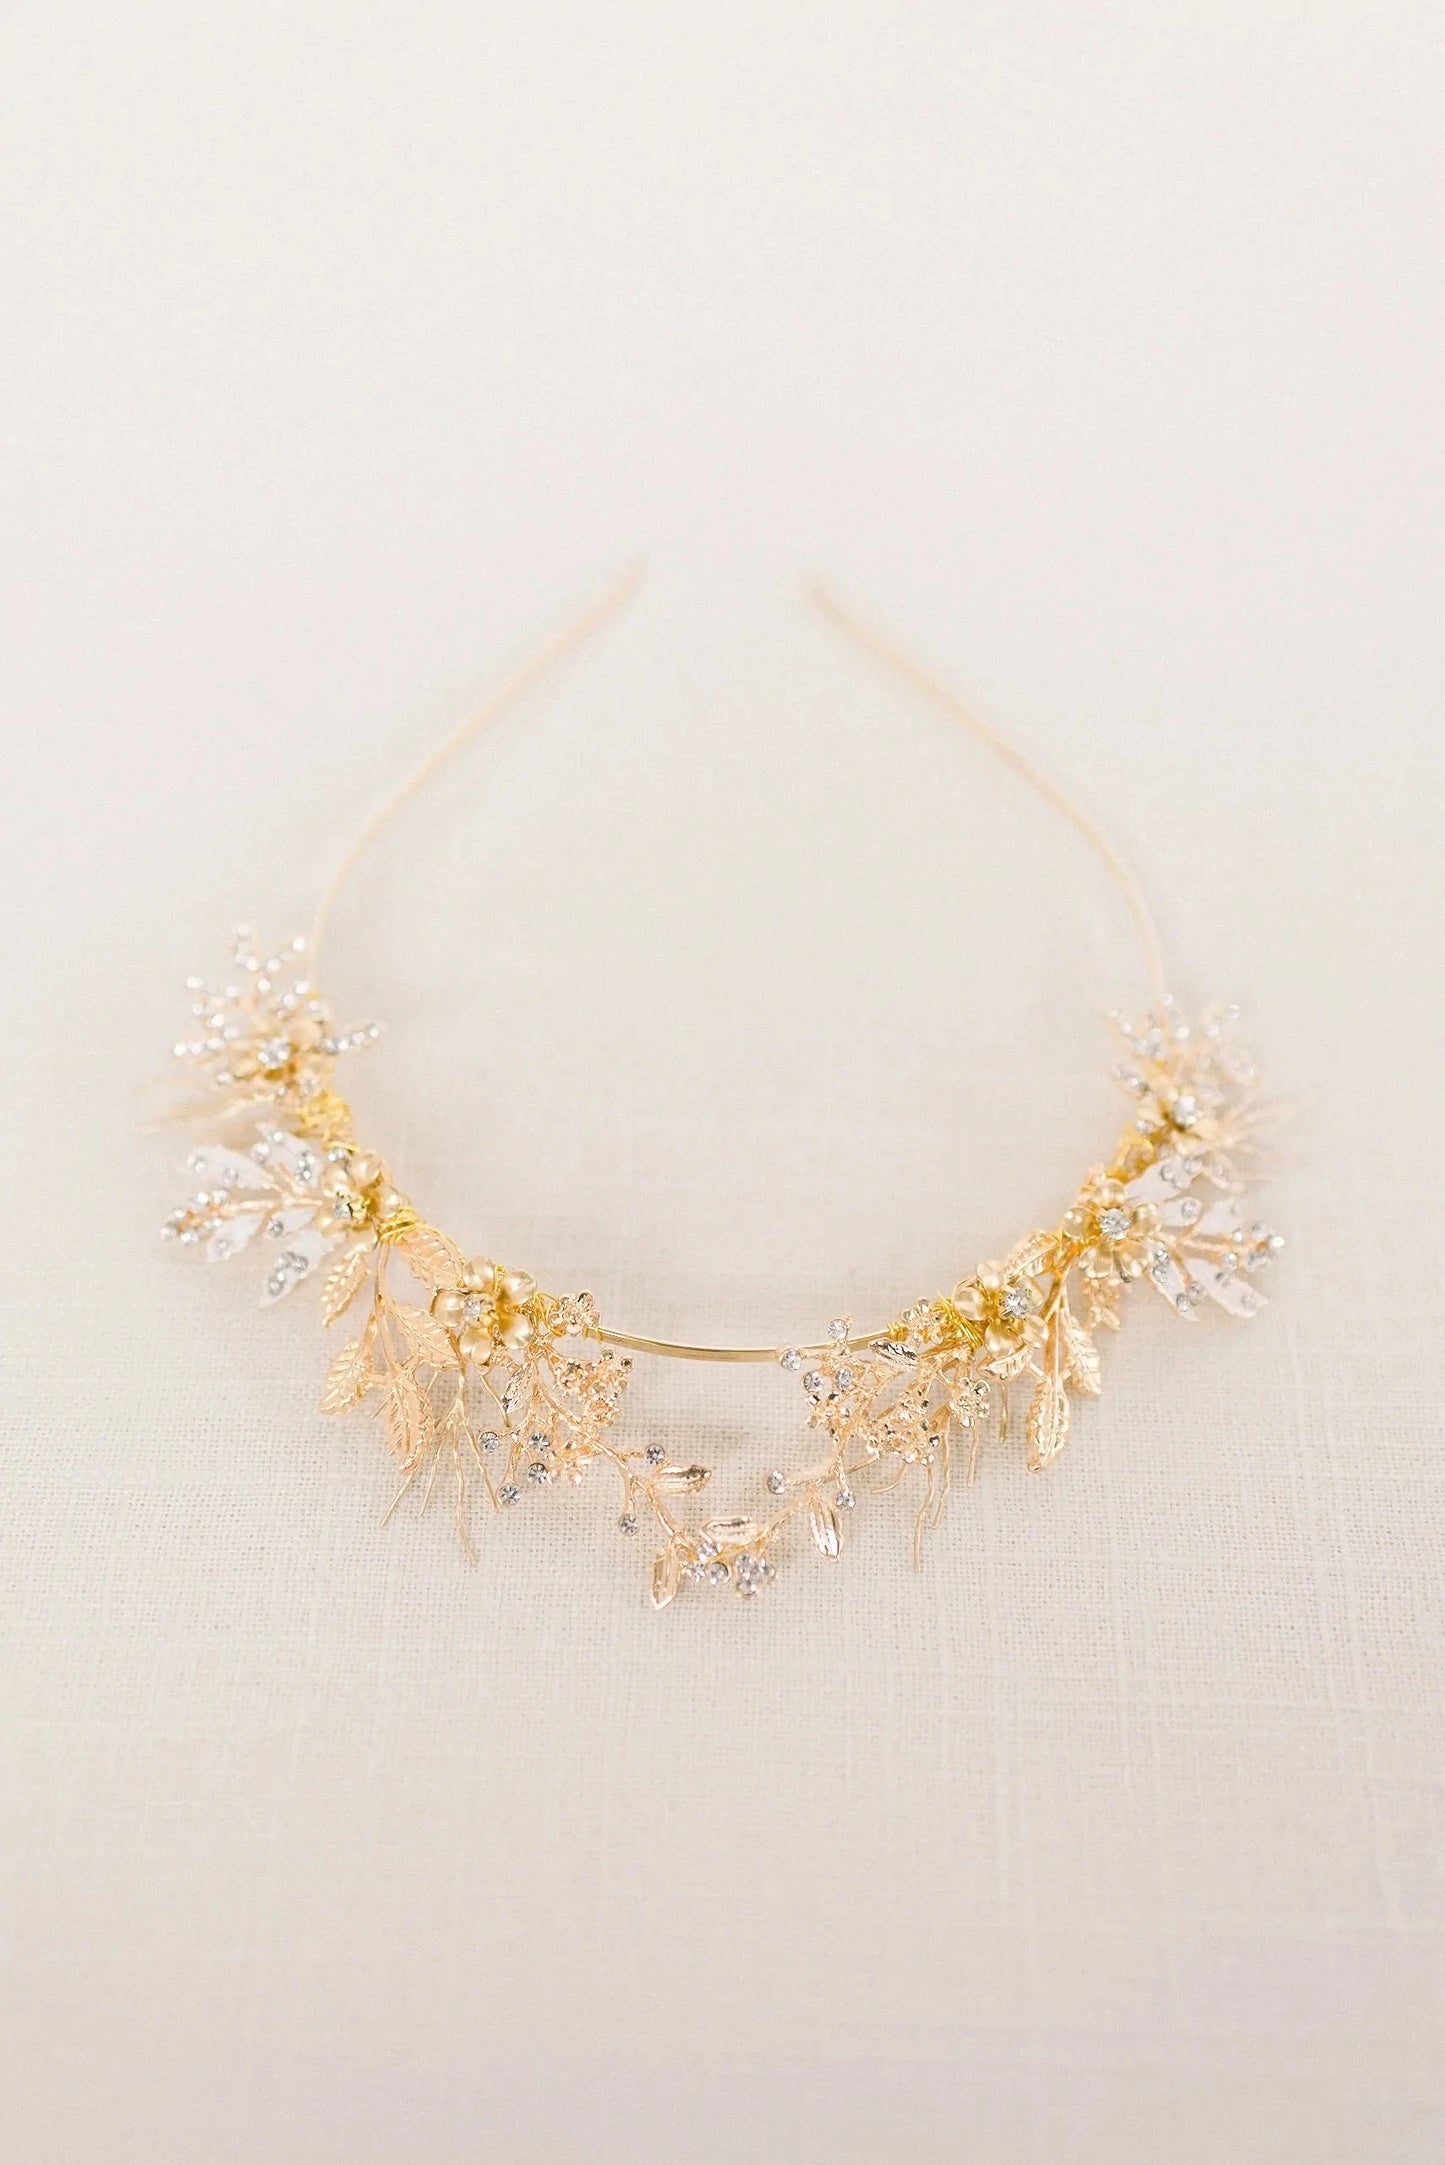 Gold Silver woodland tiara crown - style 4010 Tessa Kim